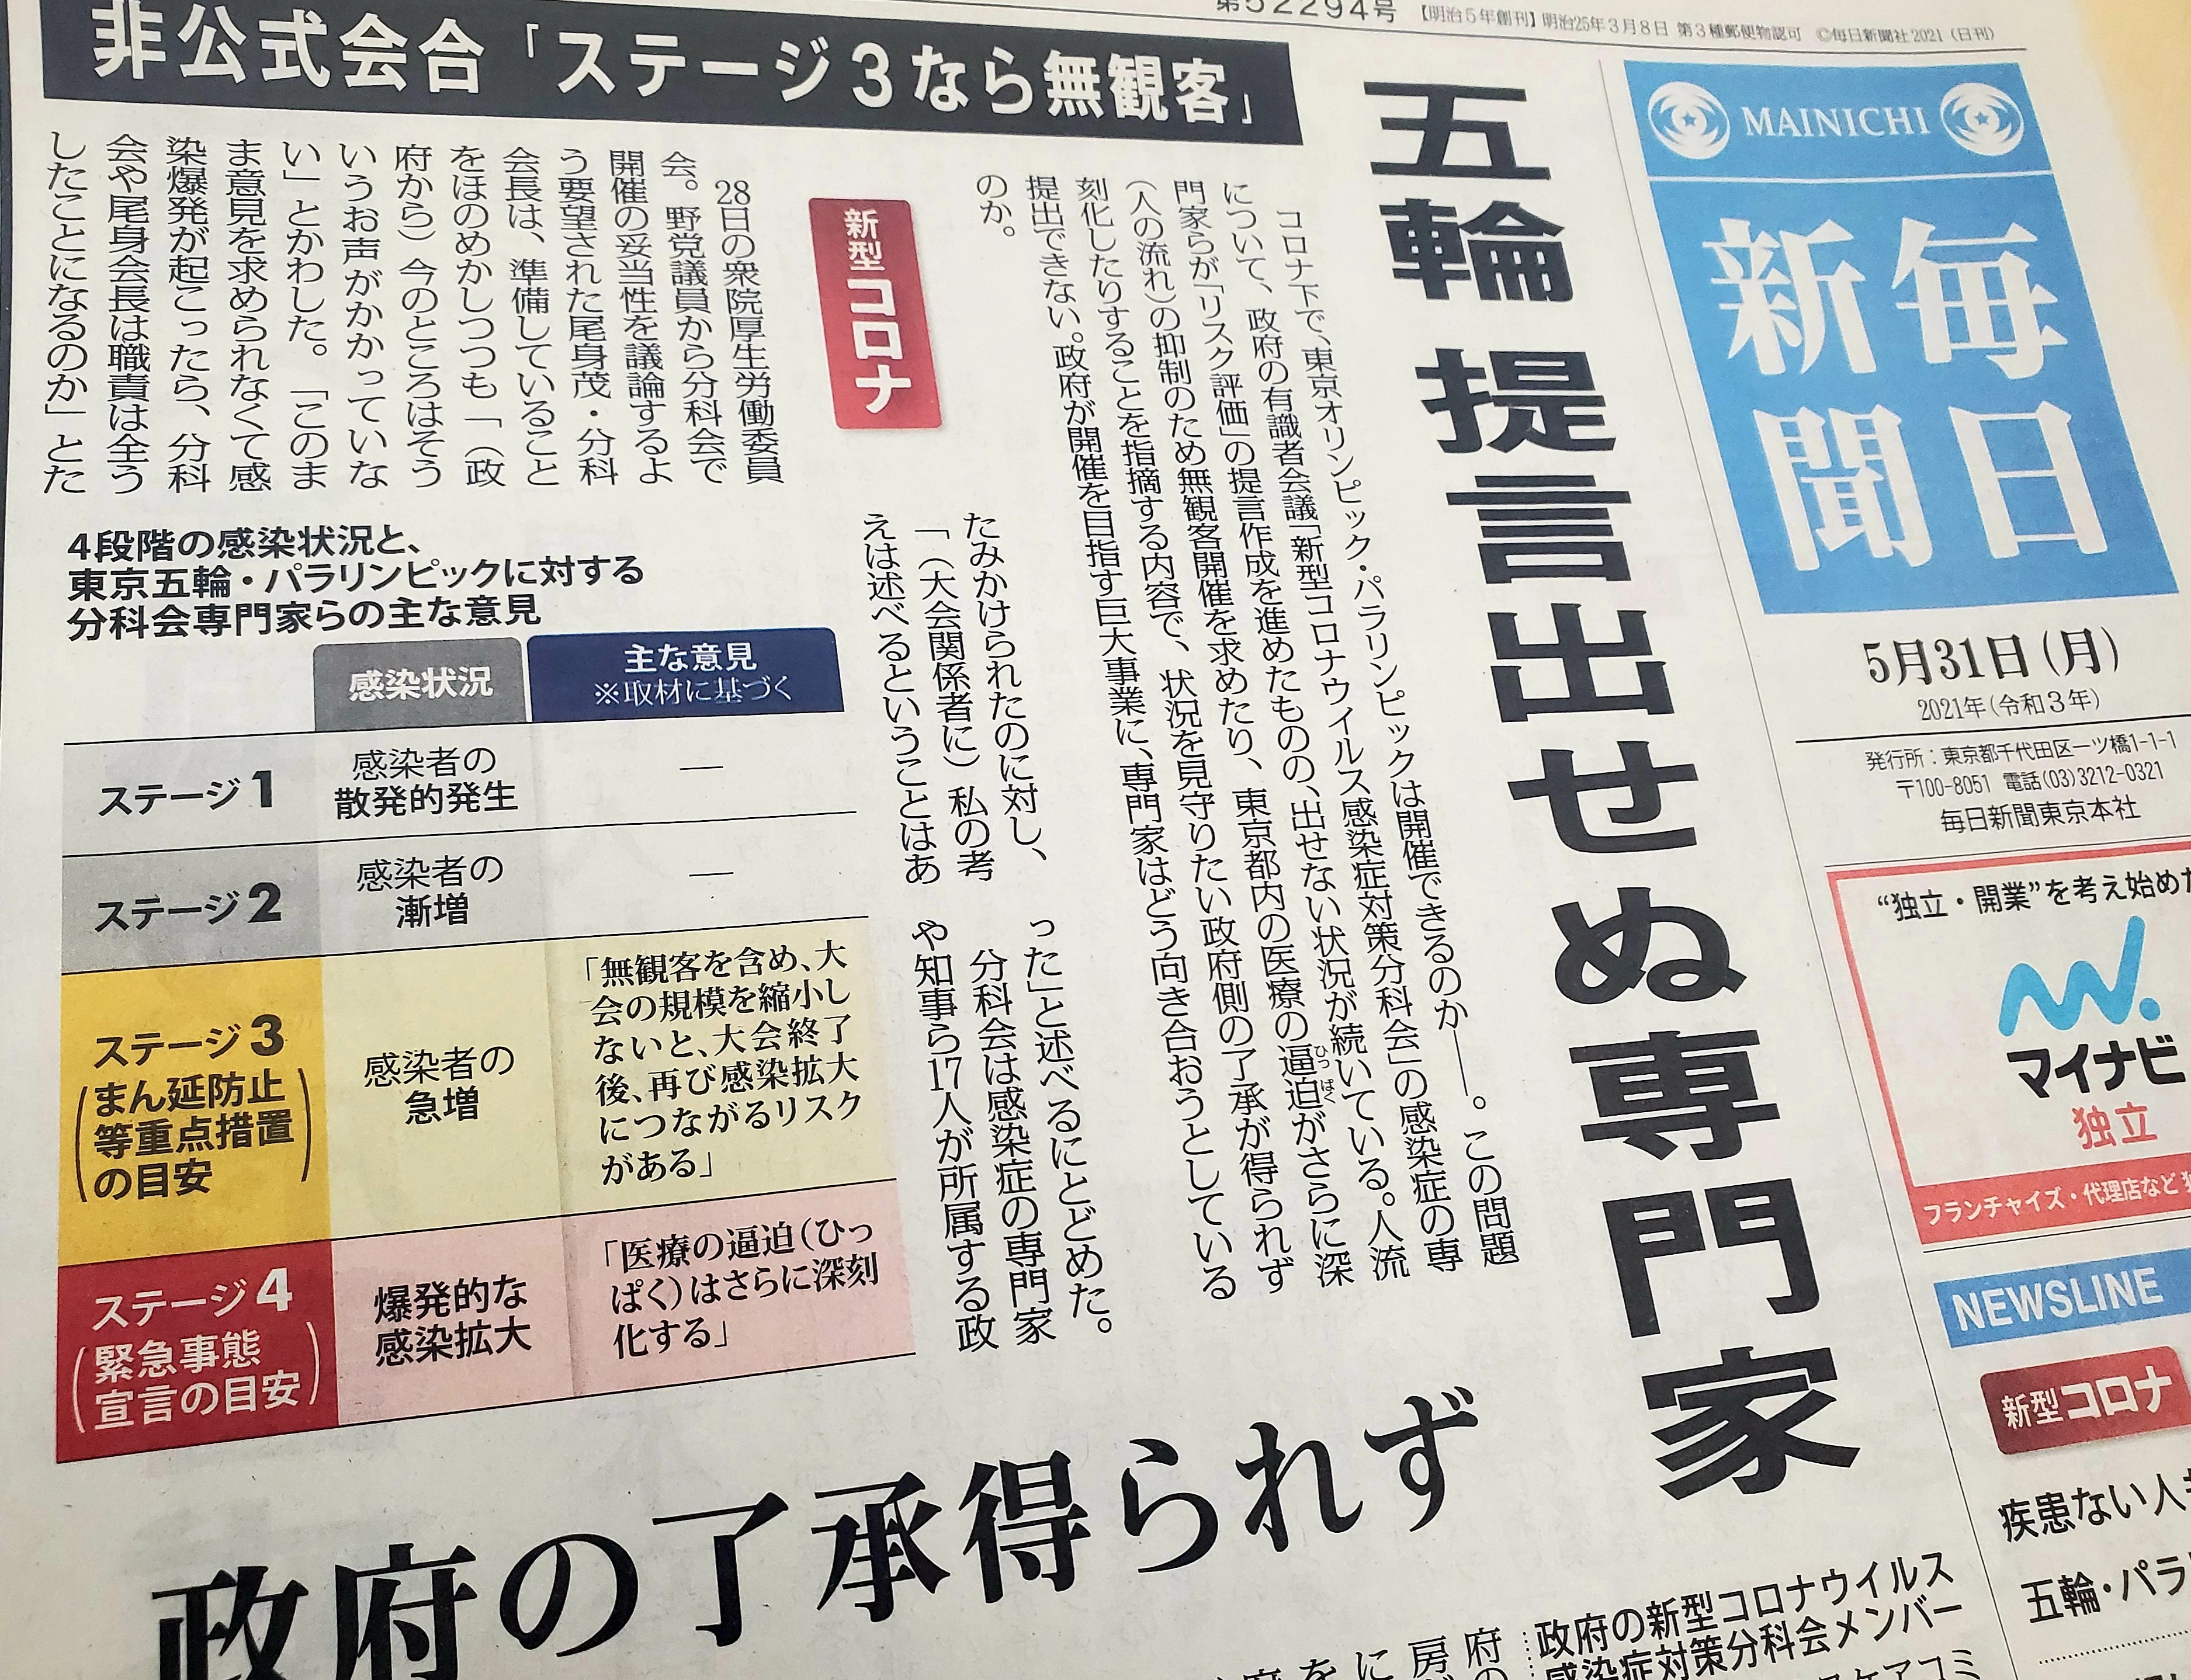 일본 마이니치신문이 5월 31일자 1면 머릿기사로 “감염증 전문가들이 정부의 승인을 얻지 못해 도쿄올림픽 관련 제언을 할 수 없게 됐다”고 전하고 있다.